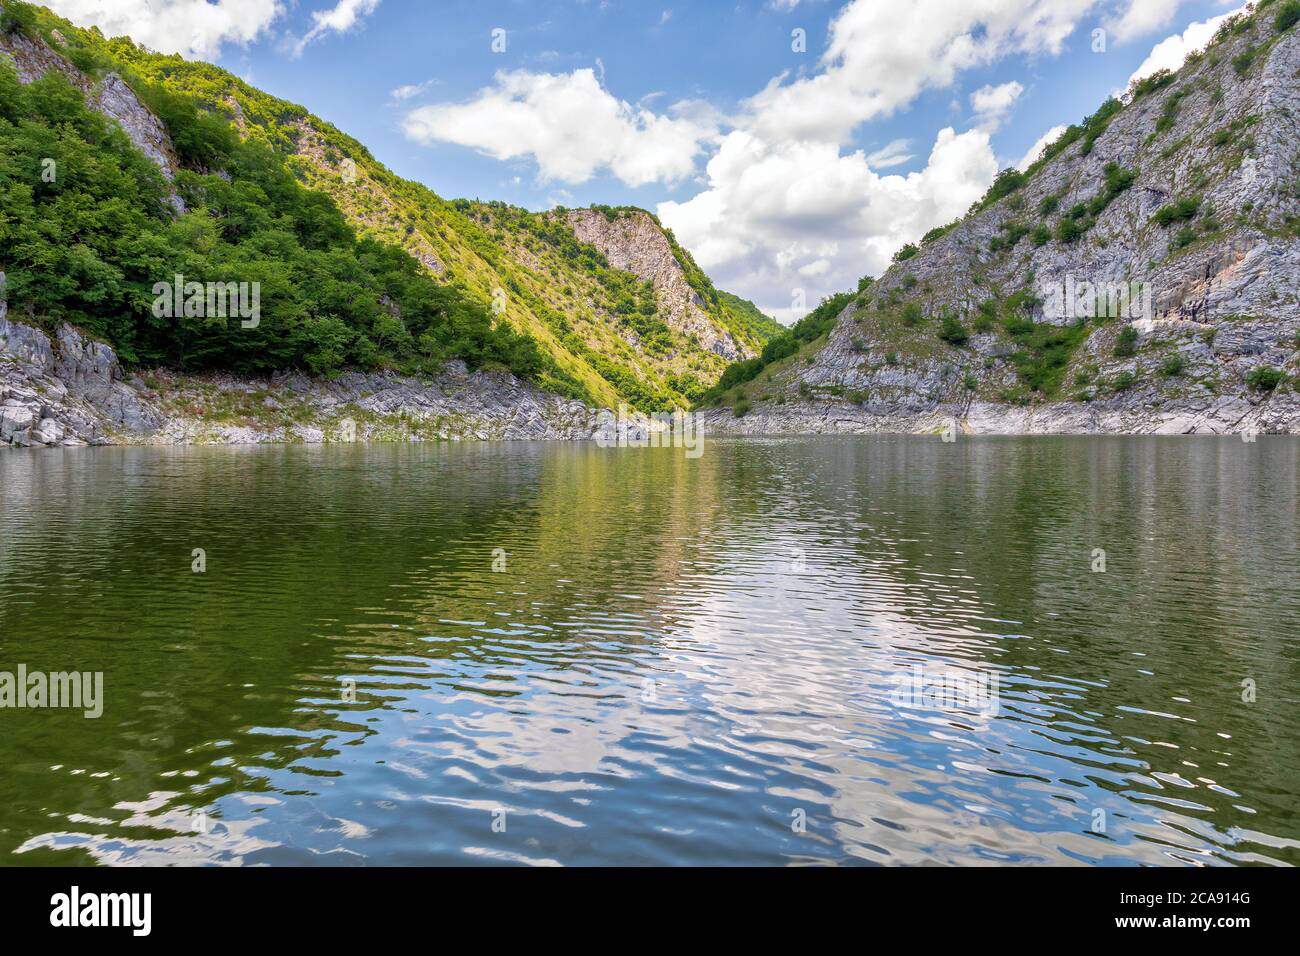 Méandres du canyon de la rivière Uvac. Réserve naturelle spéciale, destination touristique populaire dans le sud-ouest de la Serbie. Banque D'Images